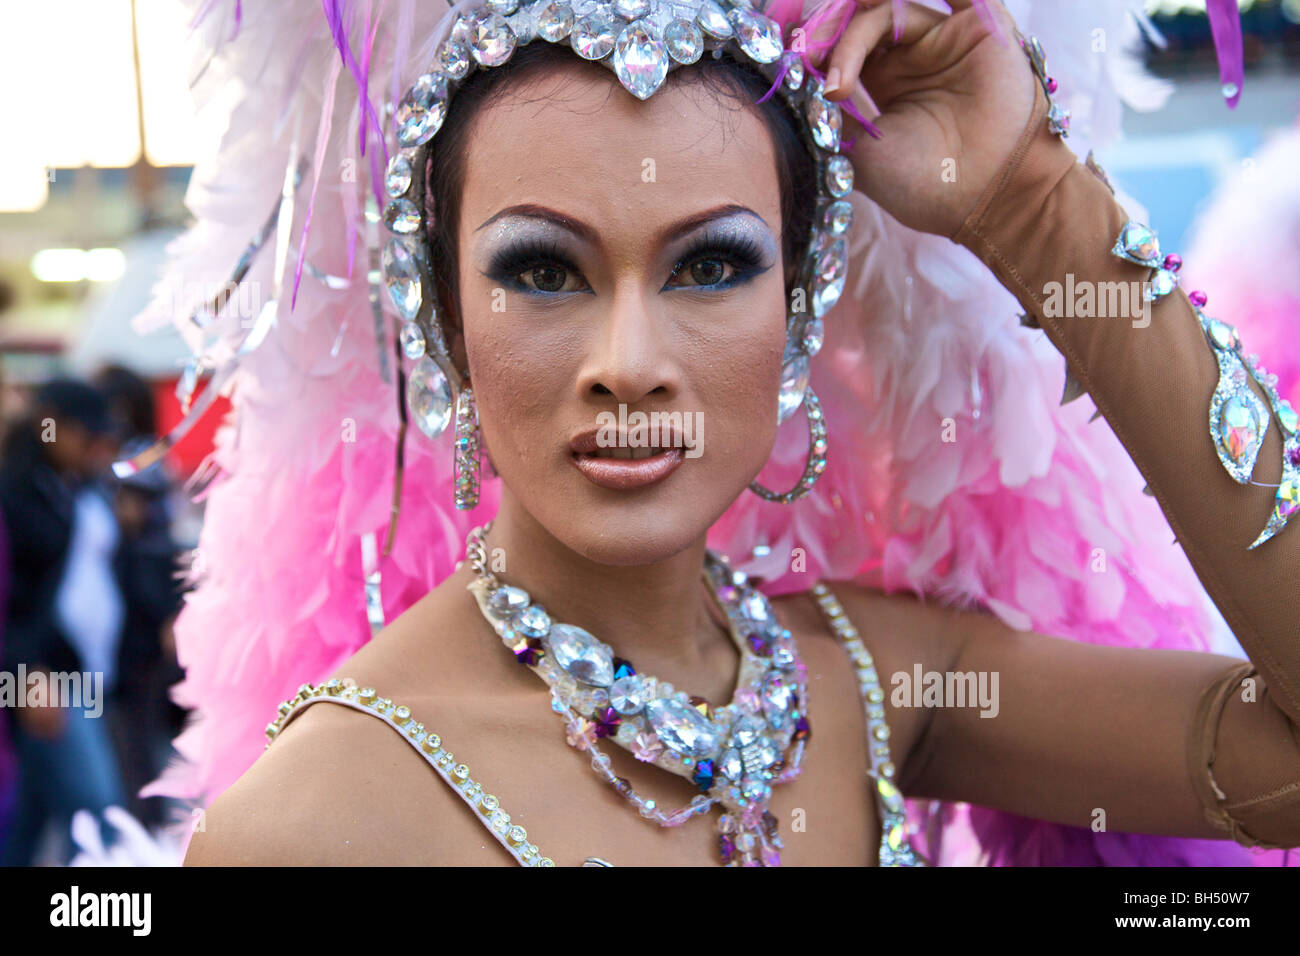 A Thai ladyman in Phuket, Thailand Stock Photo